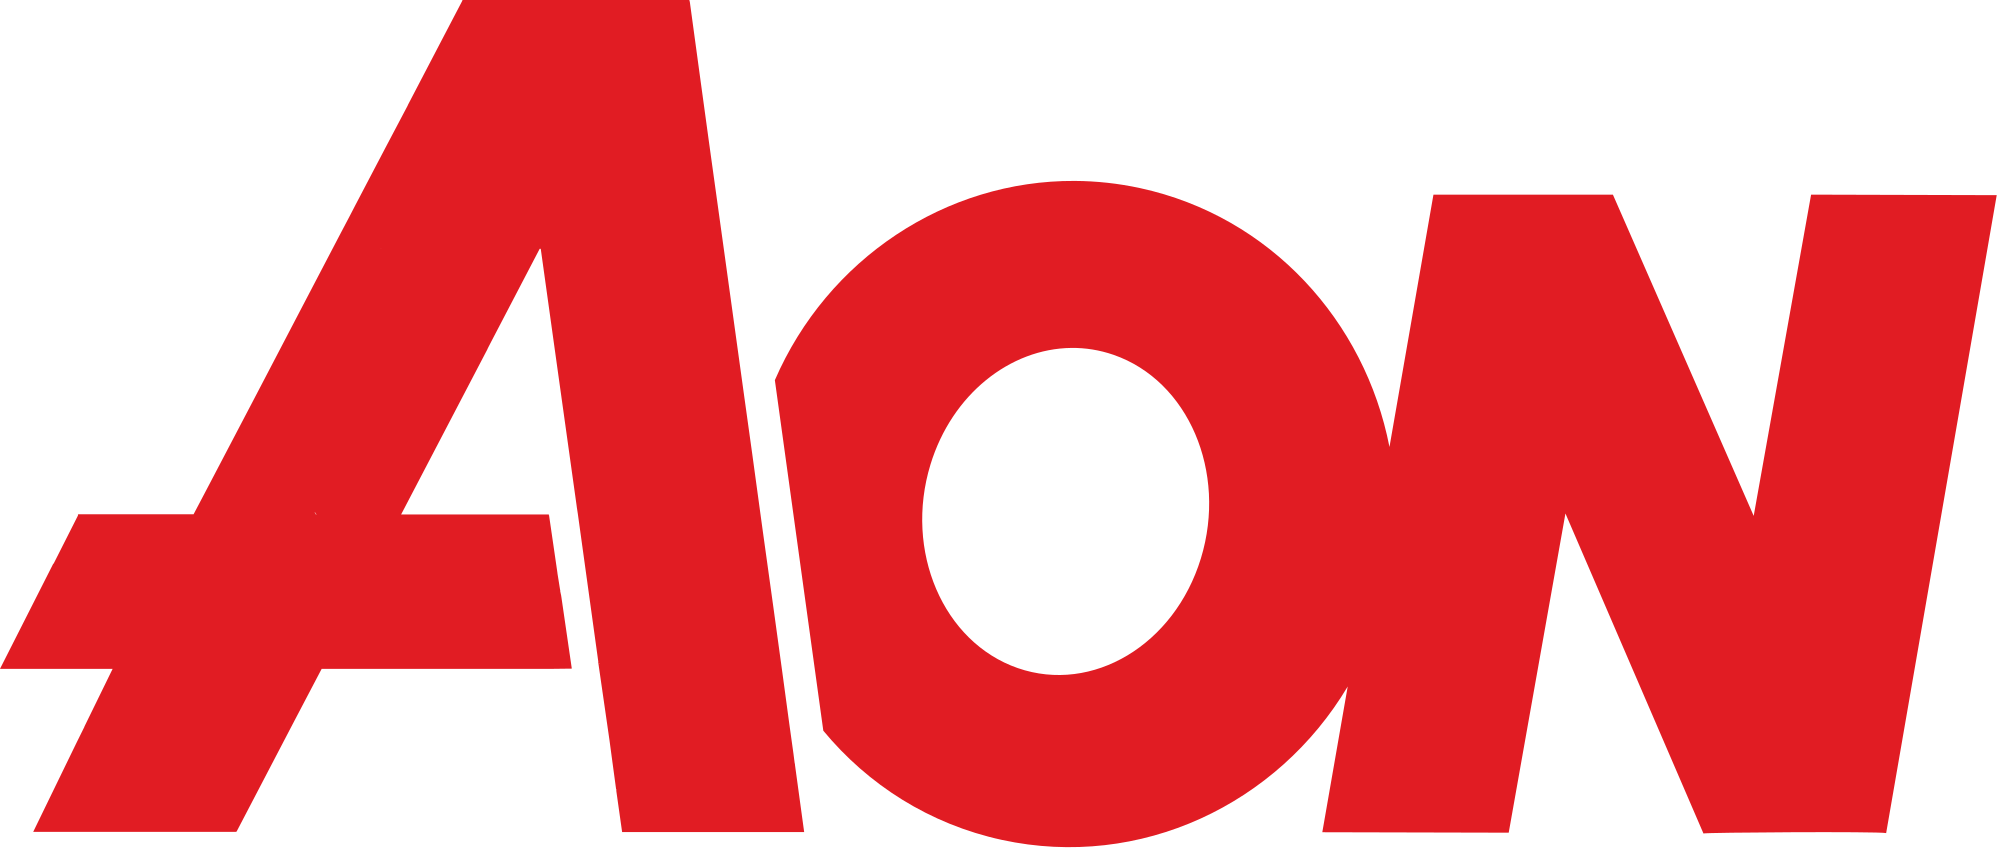 Aon Logo - Aon Corporation logo.svg